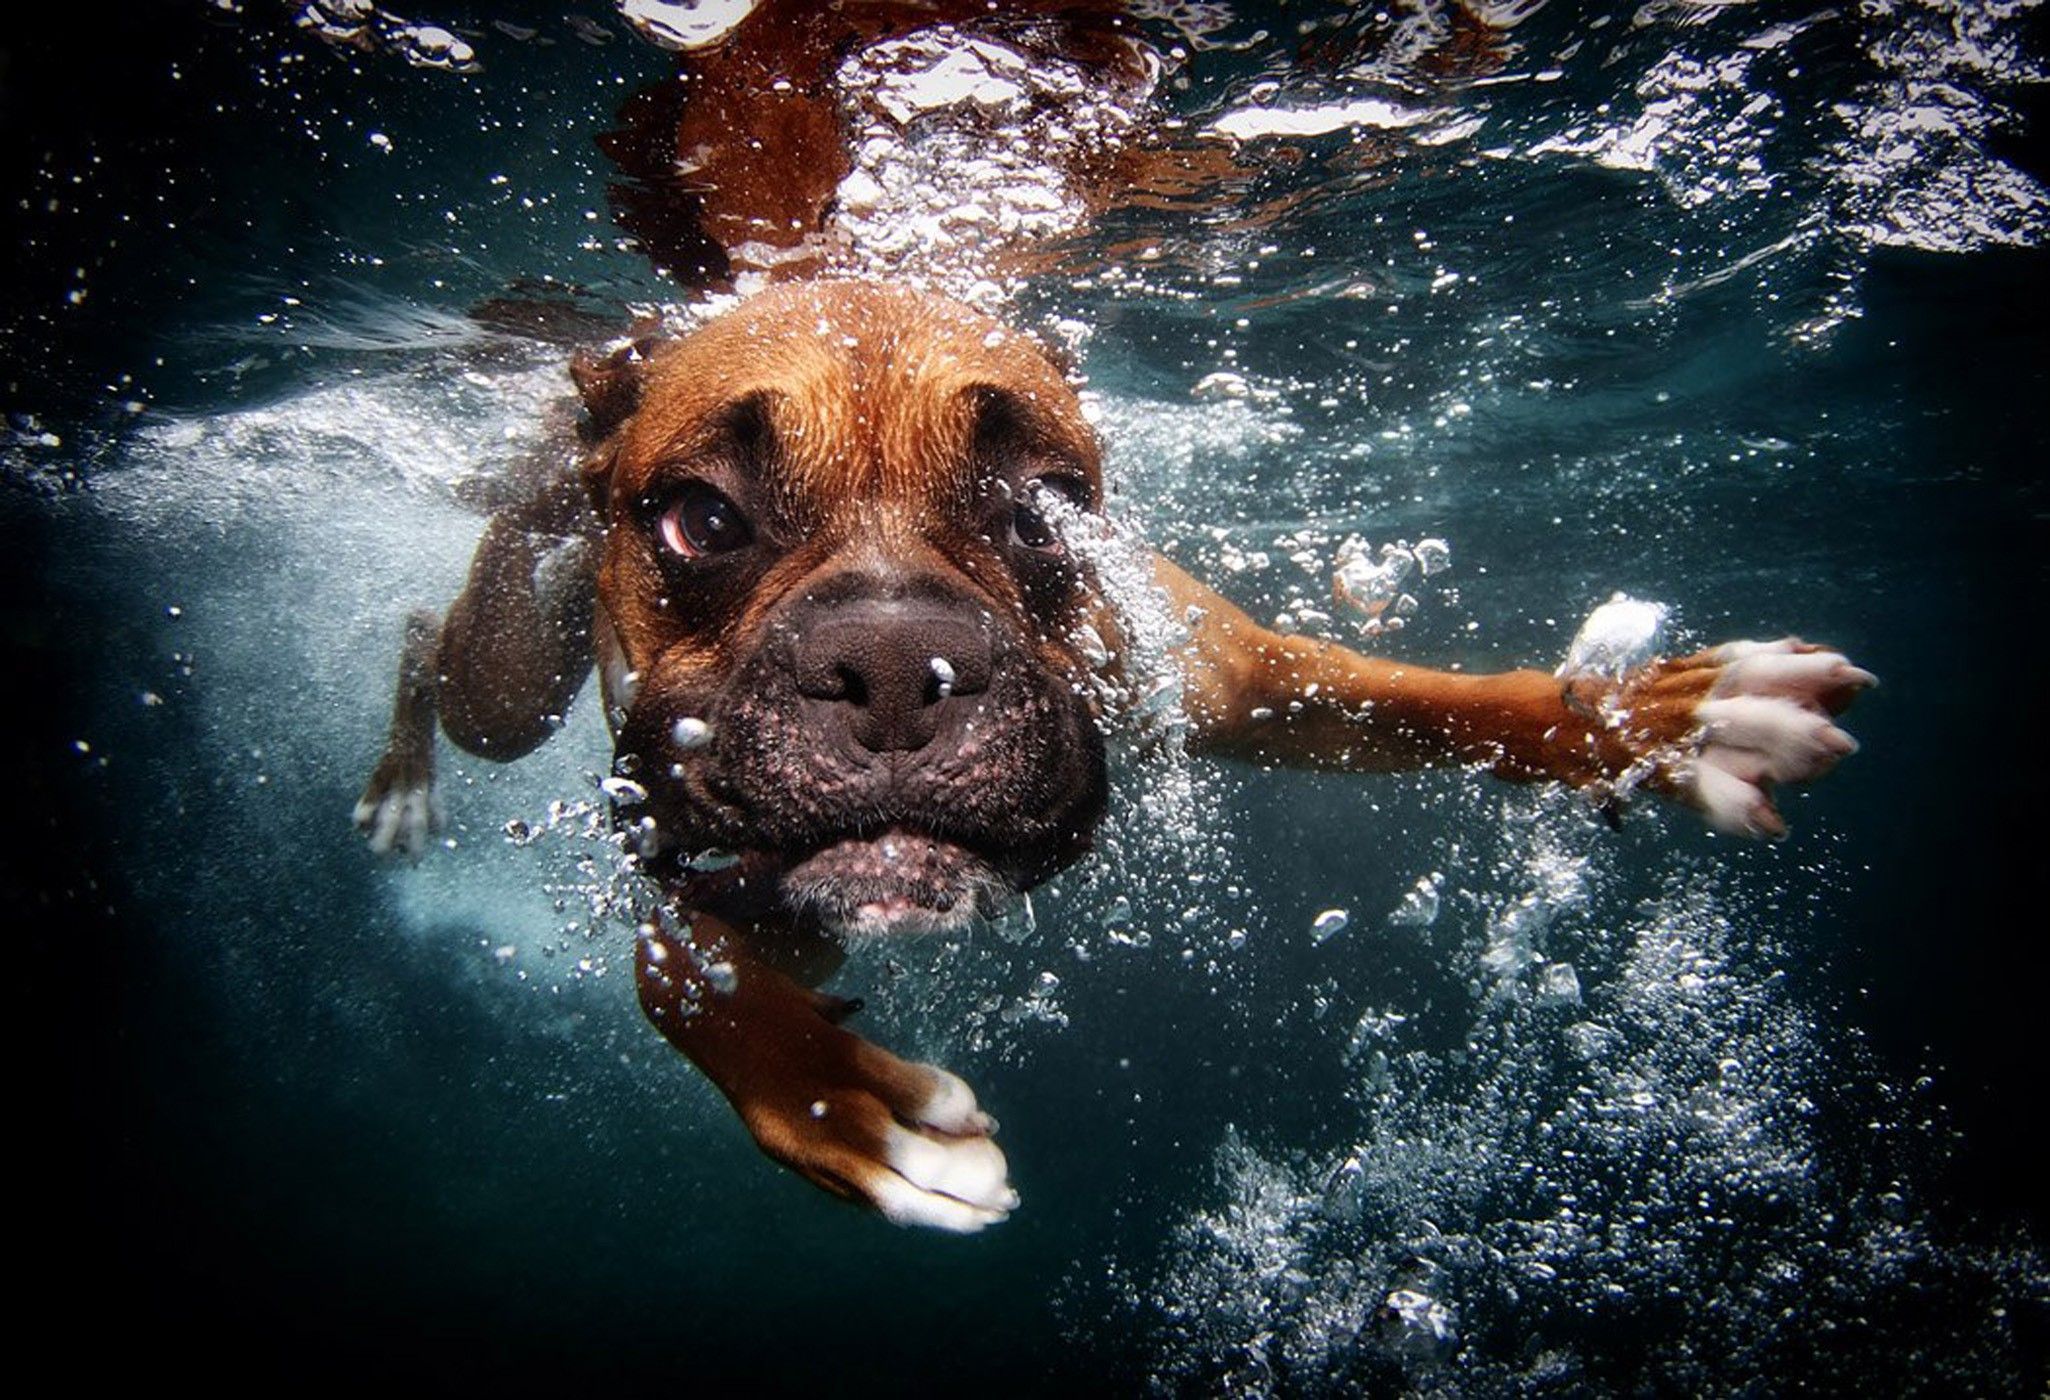 Dogs Underwater Wallpaper Free Dogs Underwater Background